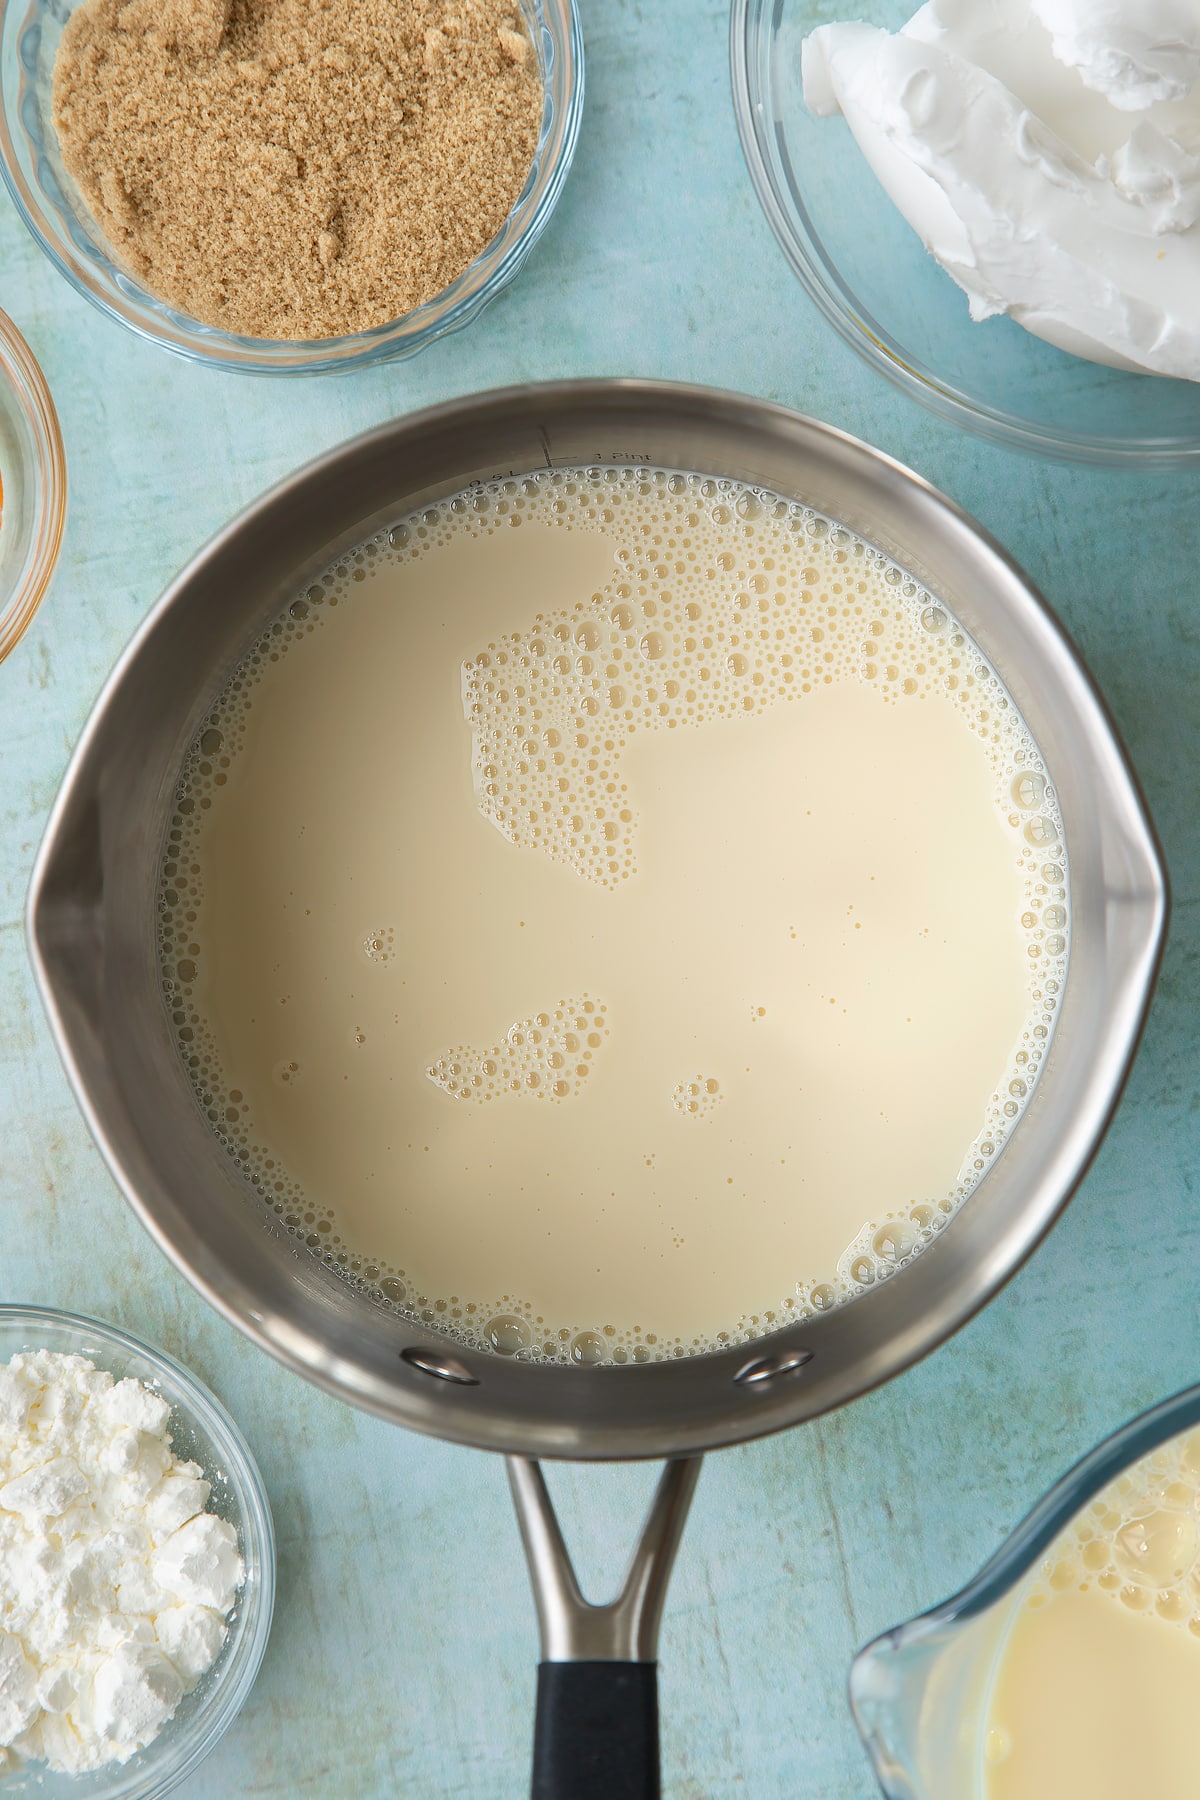 Soya milk, vanilla and sugar in a pan. Ingredients to make vegan custard surround the pan.